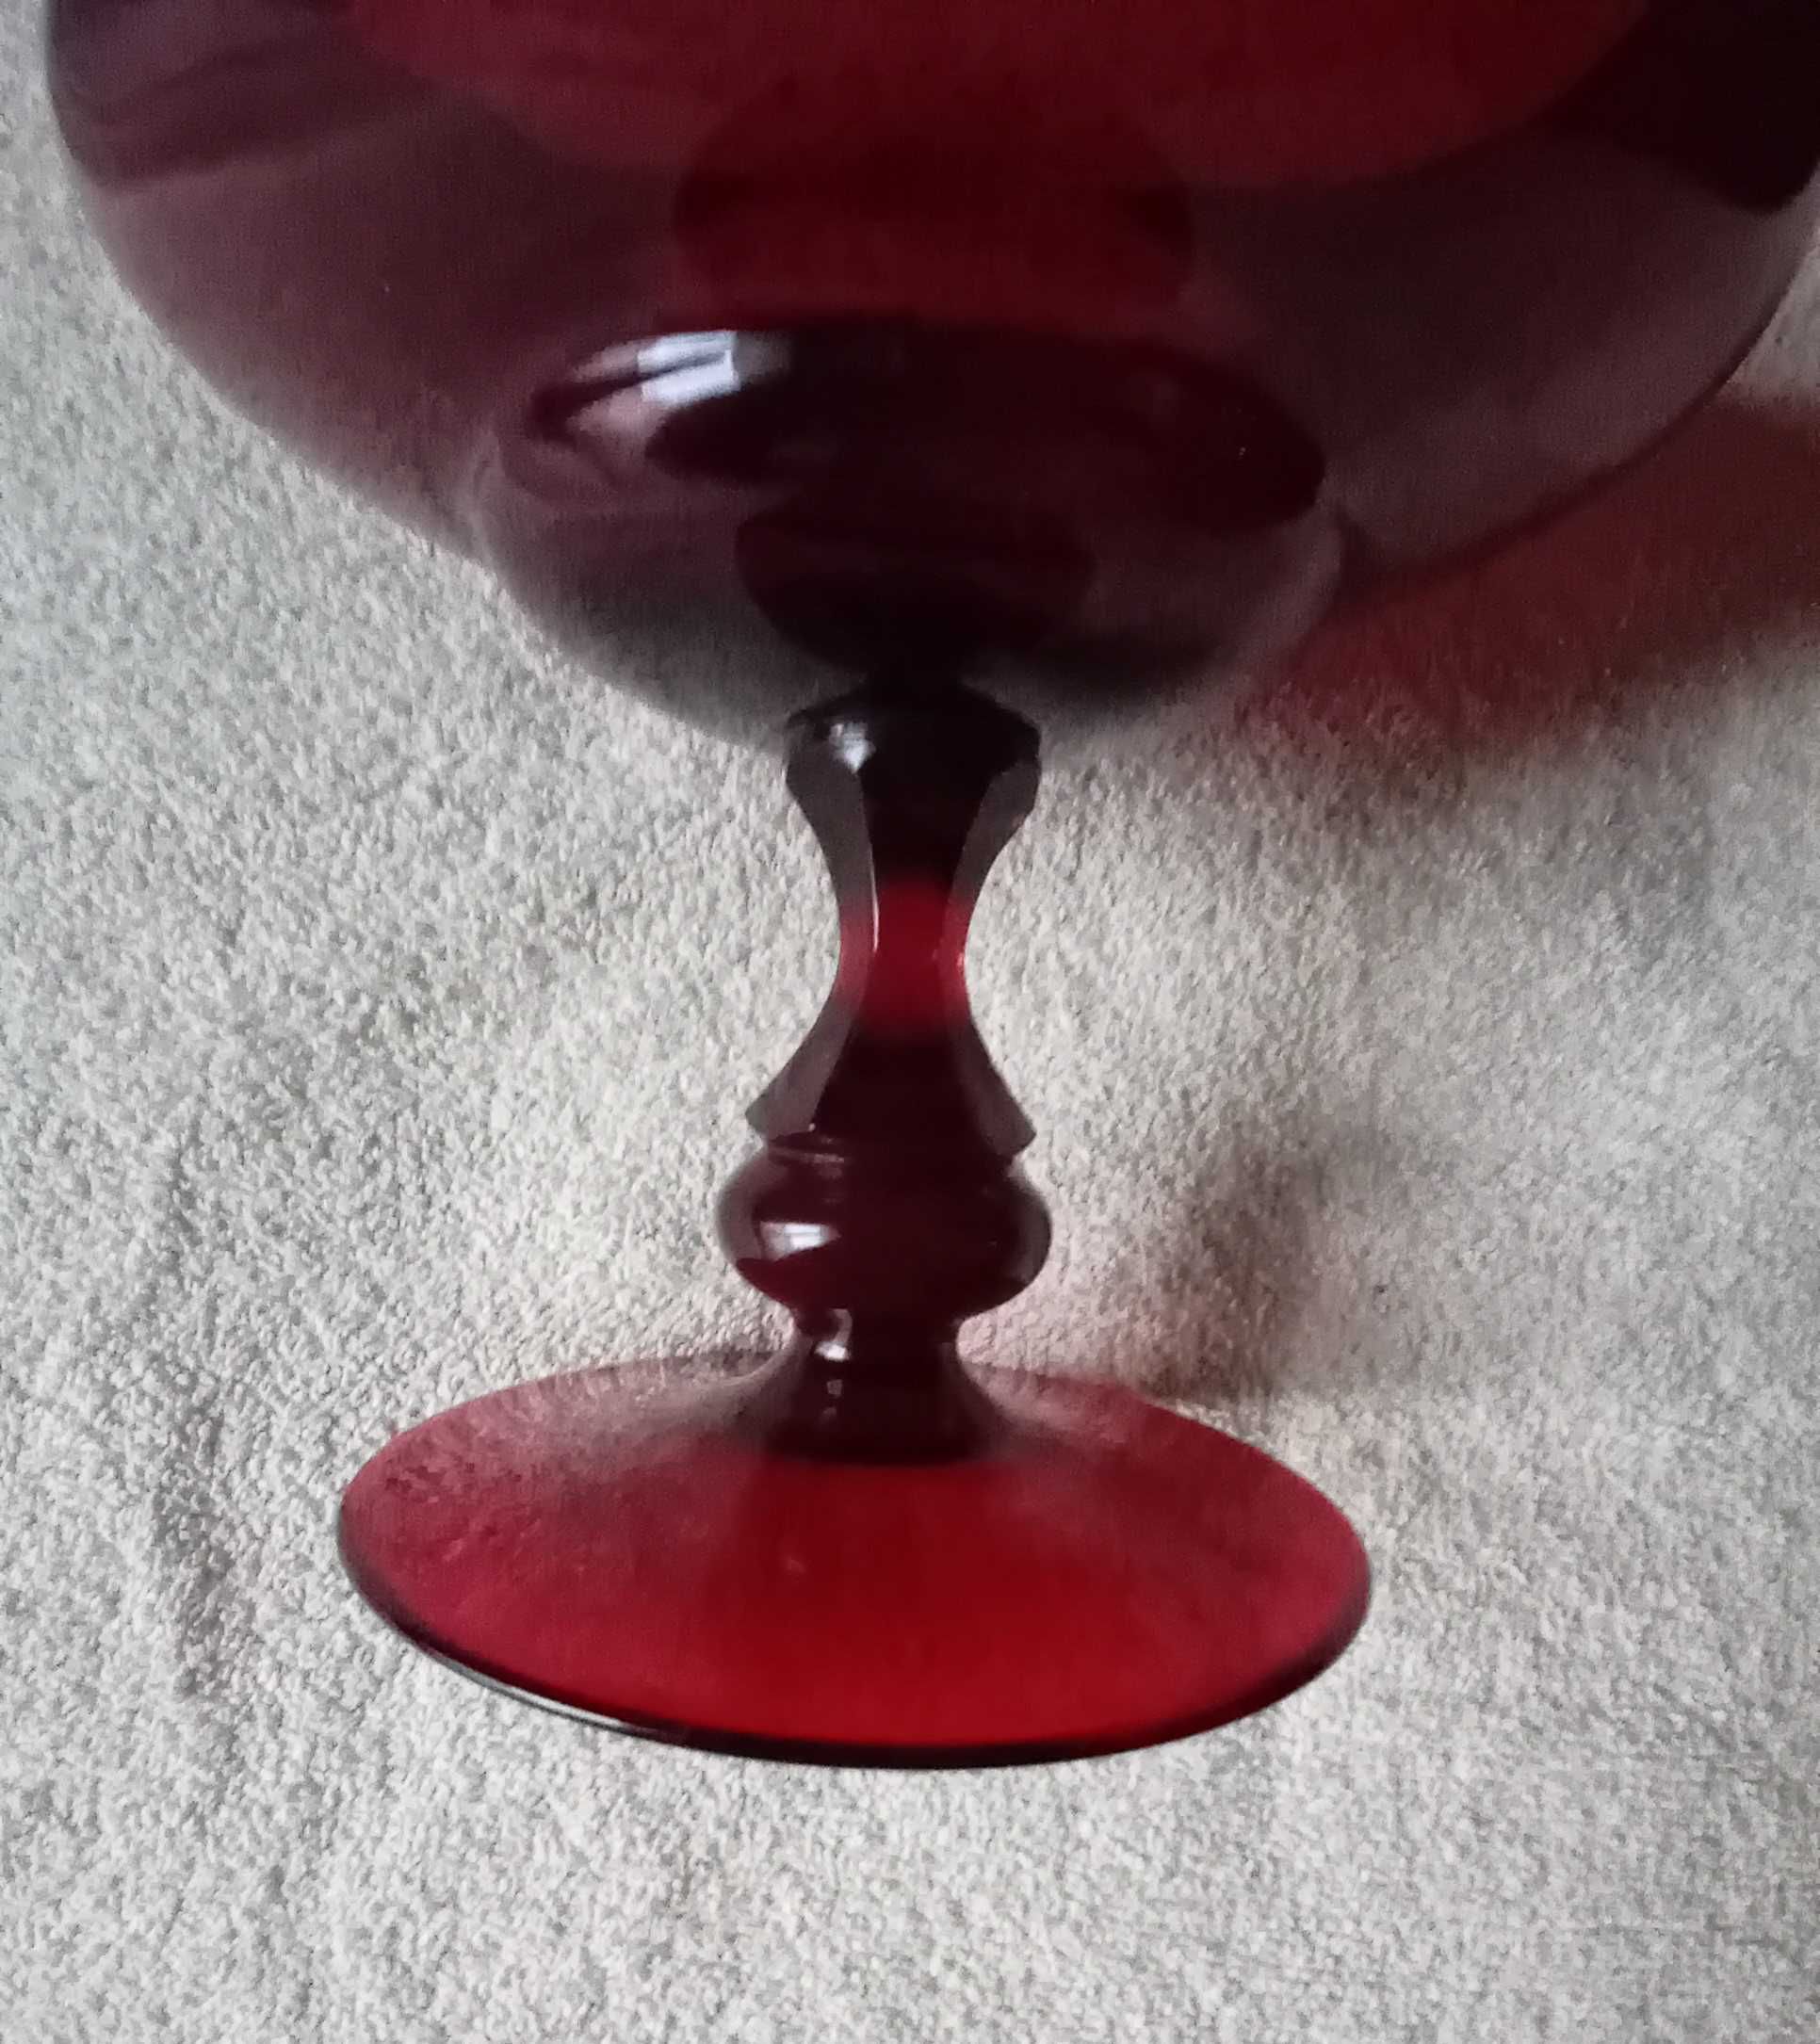 Duży rubinowy puchar - owocarka, szkło barwione w masie. Świeci w UV.